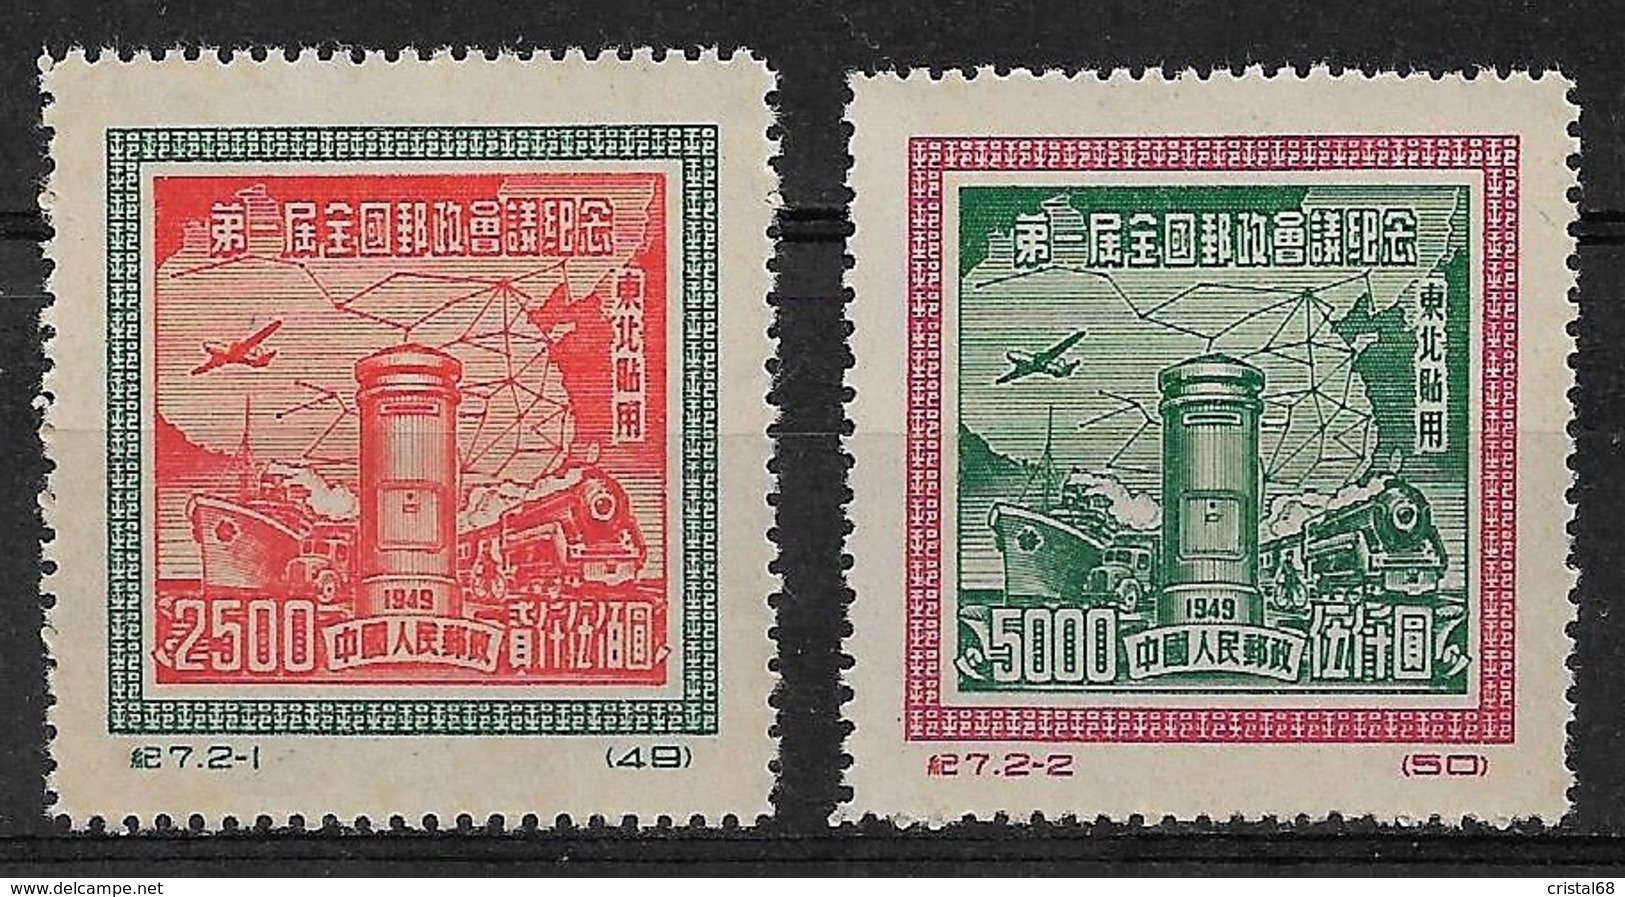 CHINE DU NORD-EST 1950 - Timbres N°144 & N°145 (Réimpressions Officielles) - Neufs - Chine Du Nord-Est 1946-48